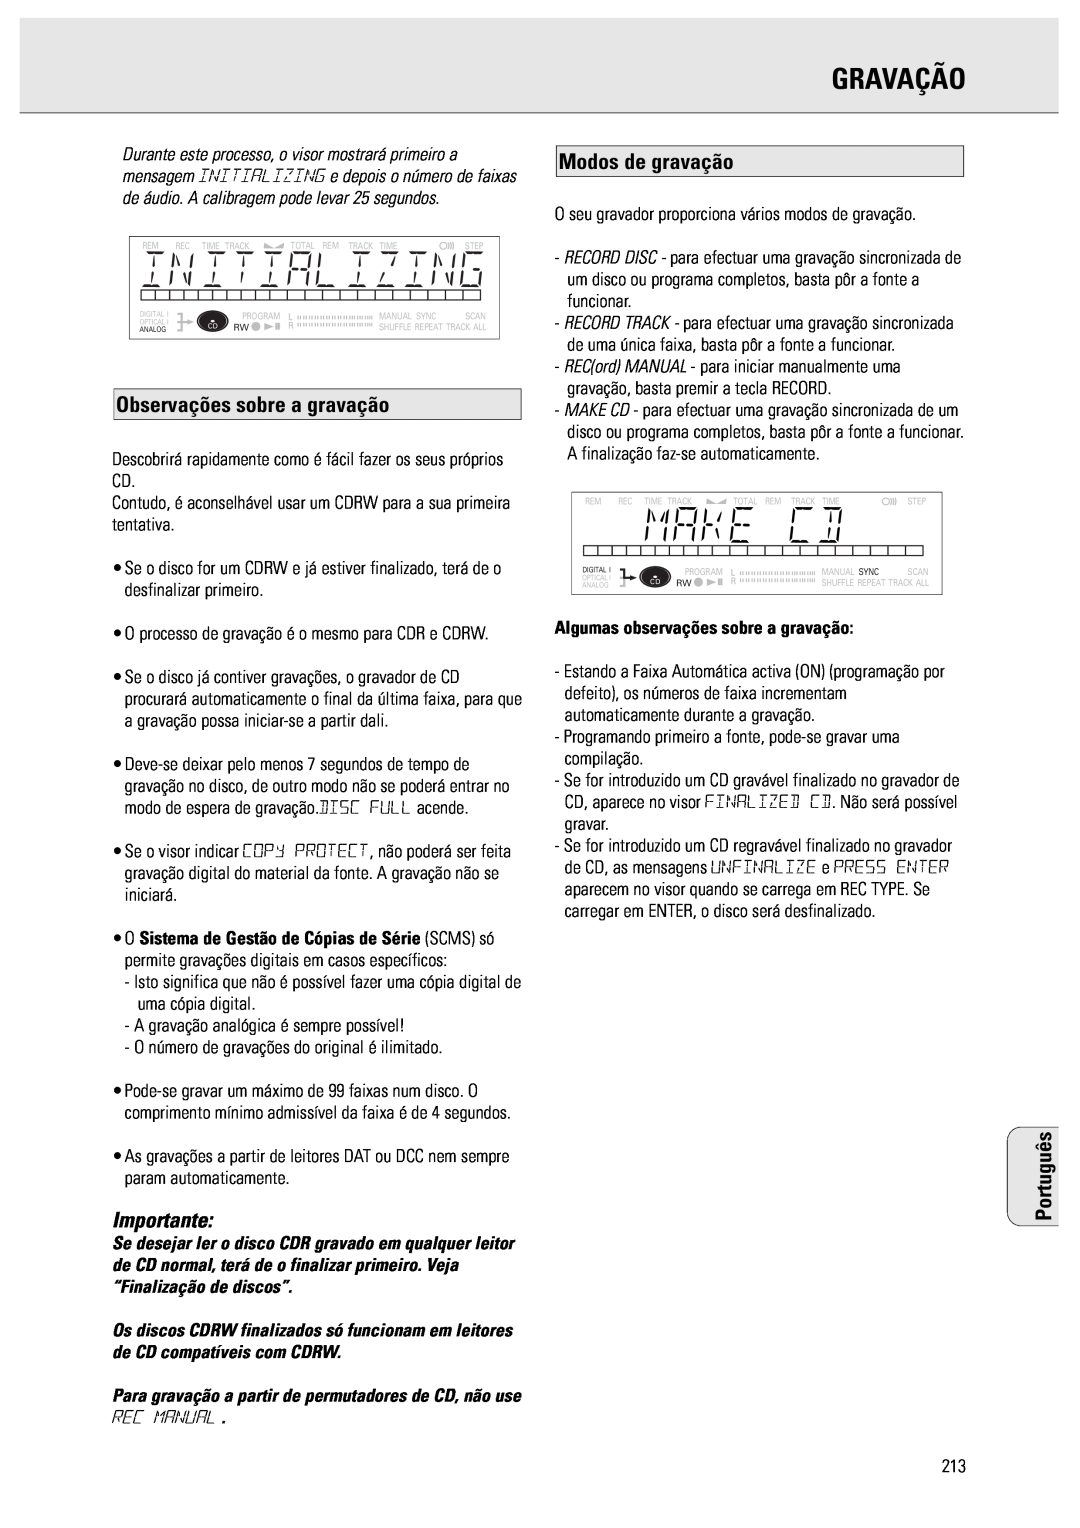 Philips CDR570 manual Gravação, Observações sobre a gravação, Importante, Modos de gravação, Rec Manual, Português 